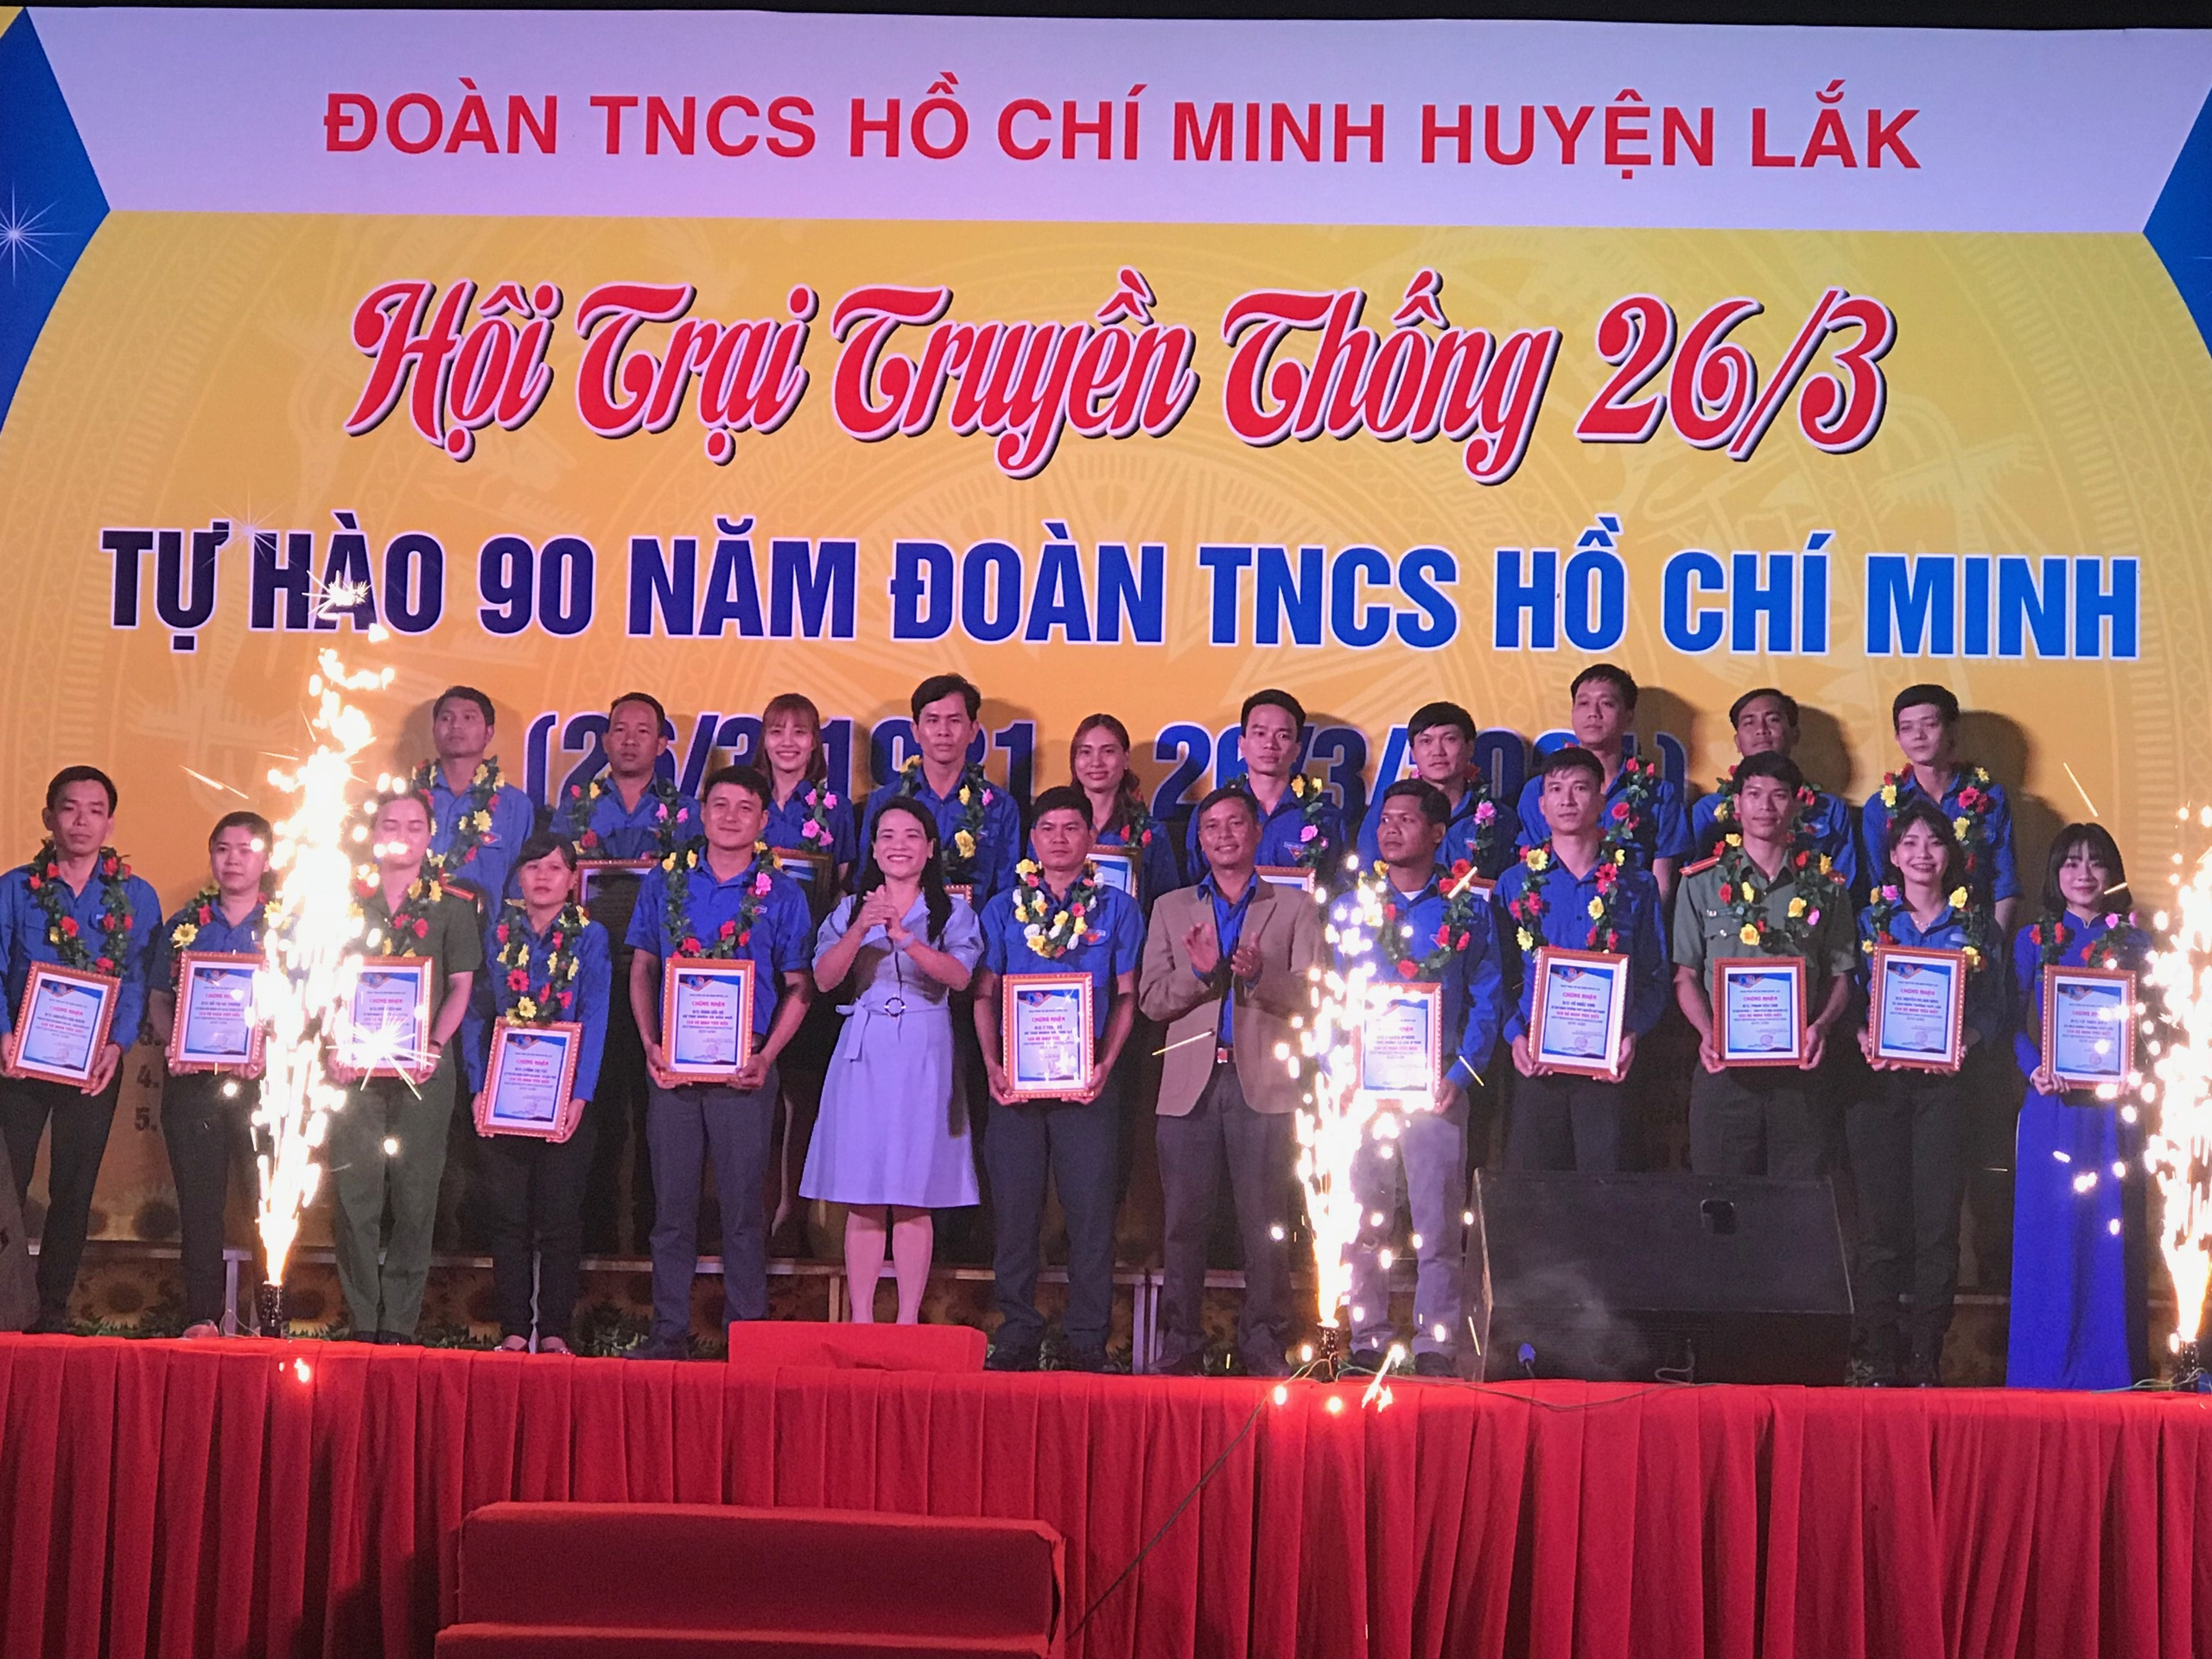 Huyện Lắk: Sôi nổi Hội trại truyền thống năm 2021